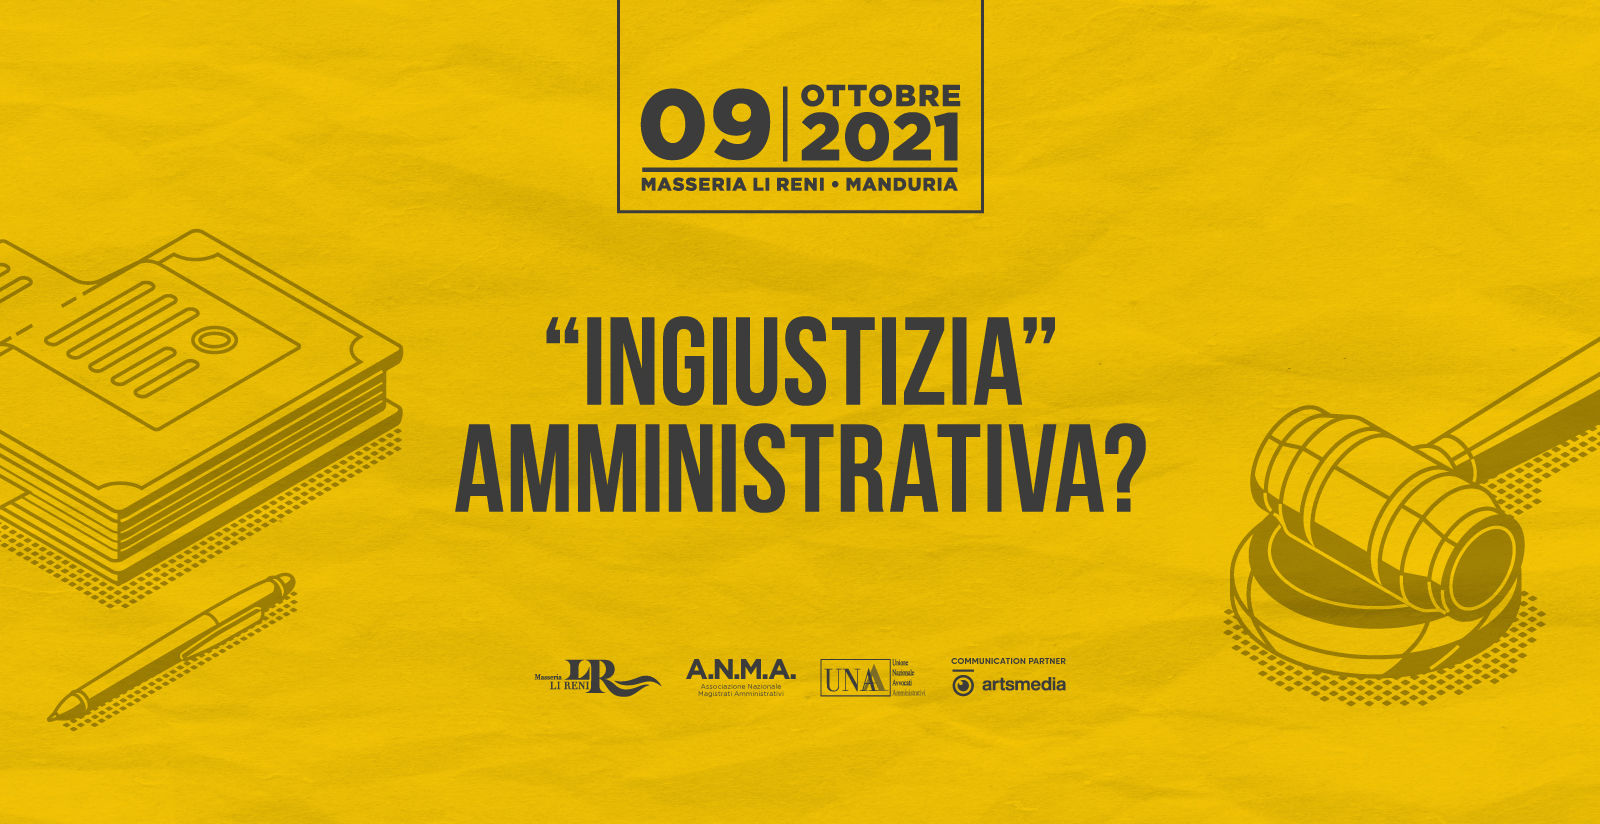 9 ottobre evento ANMA - UNAA "Ingiustizia" Amministrativa? | Masseria Li Reni 2